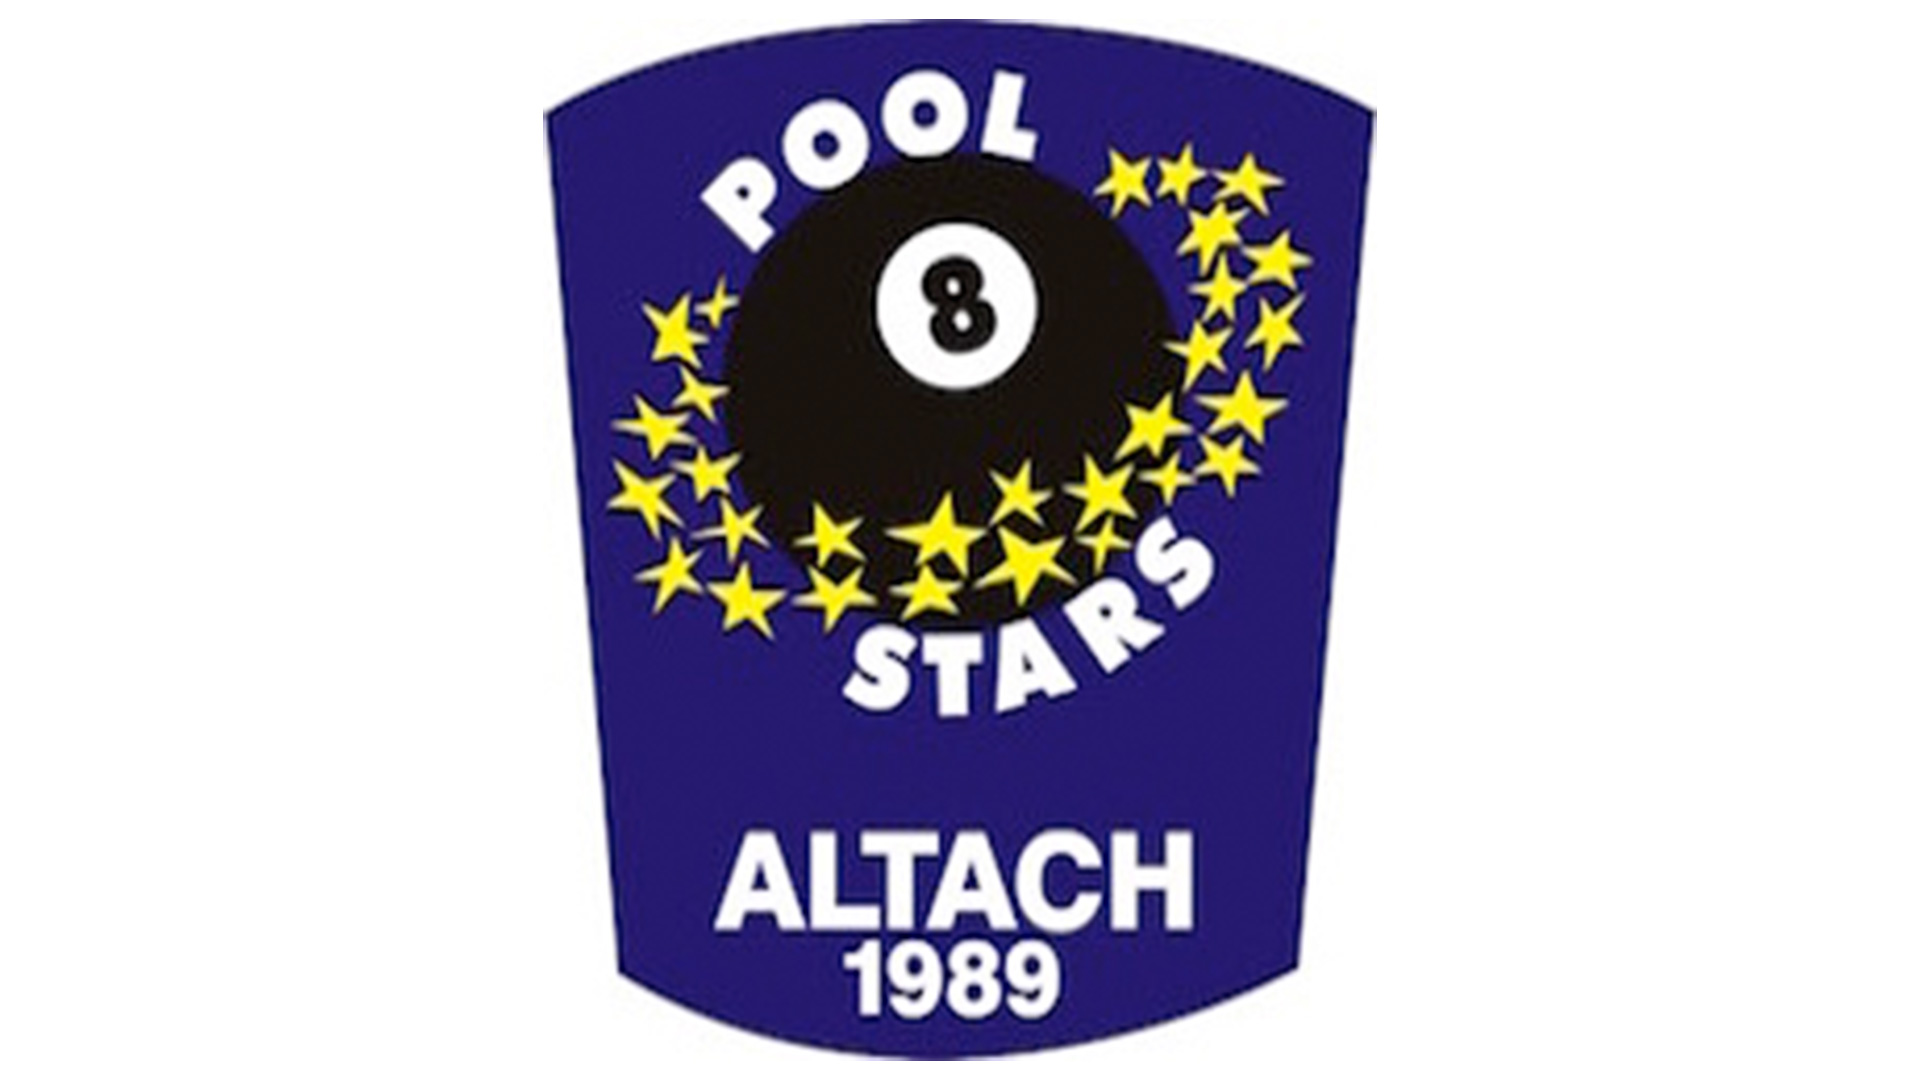 Poolstars Altach